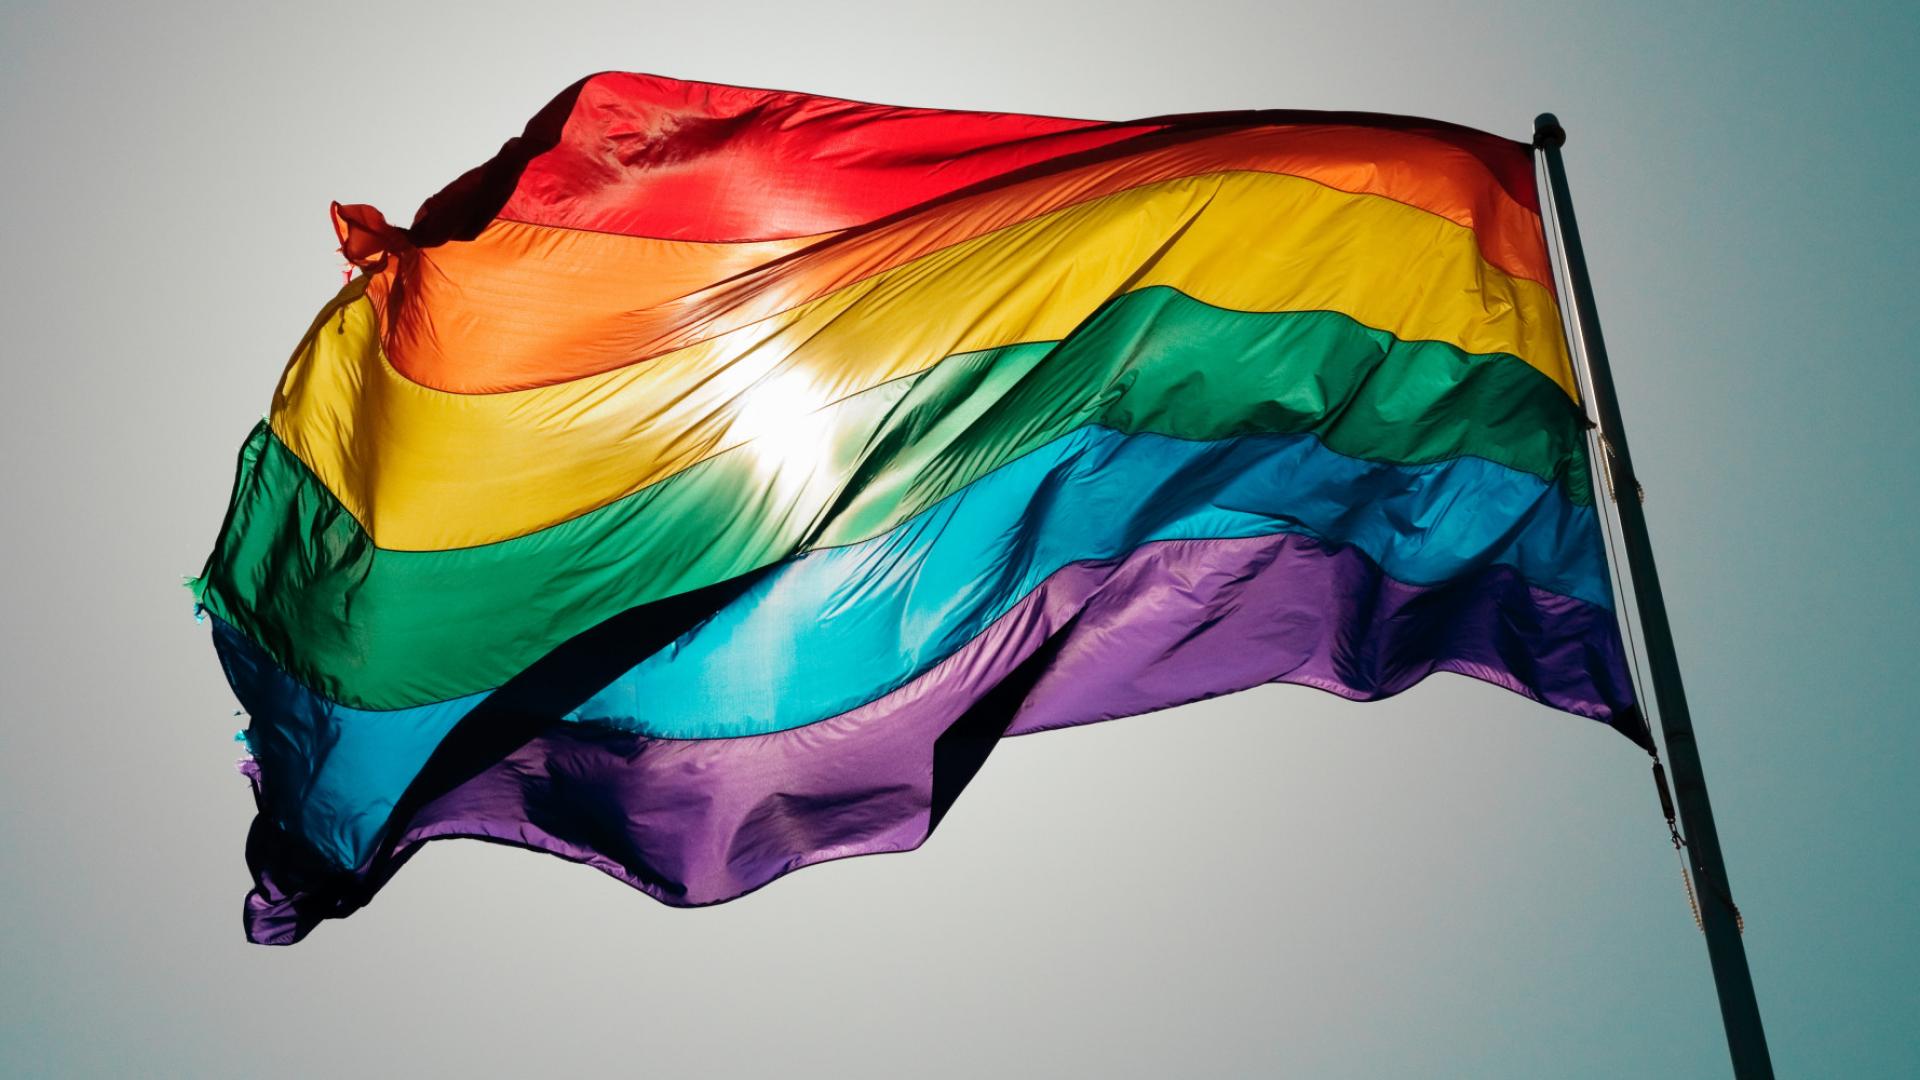 rainbow flag.jpg